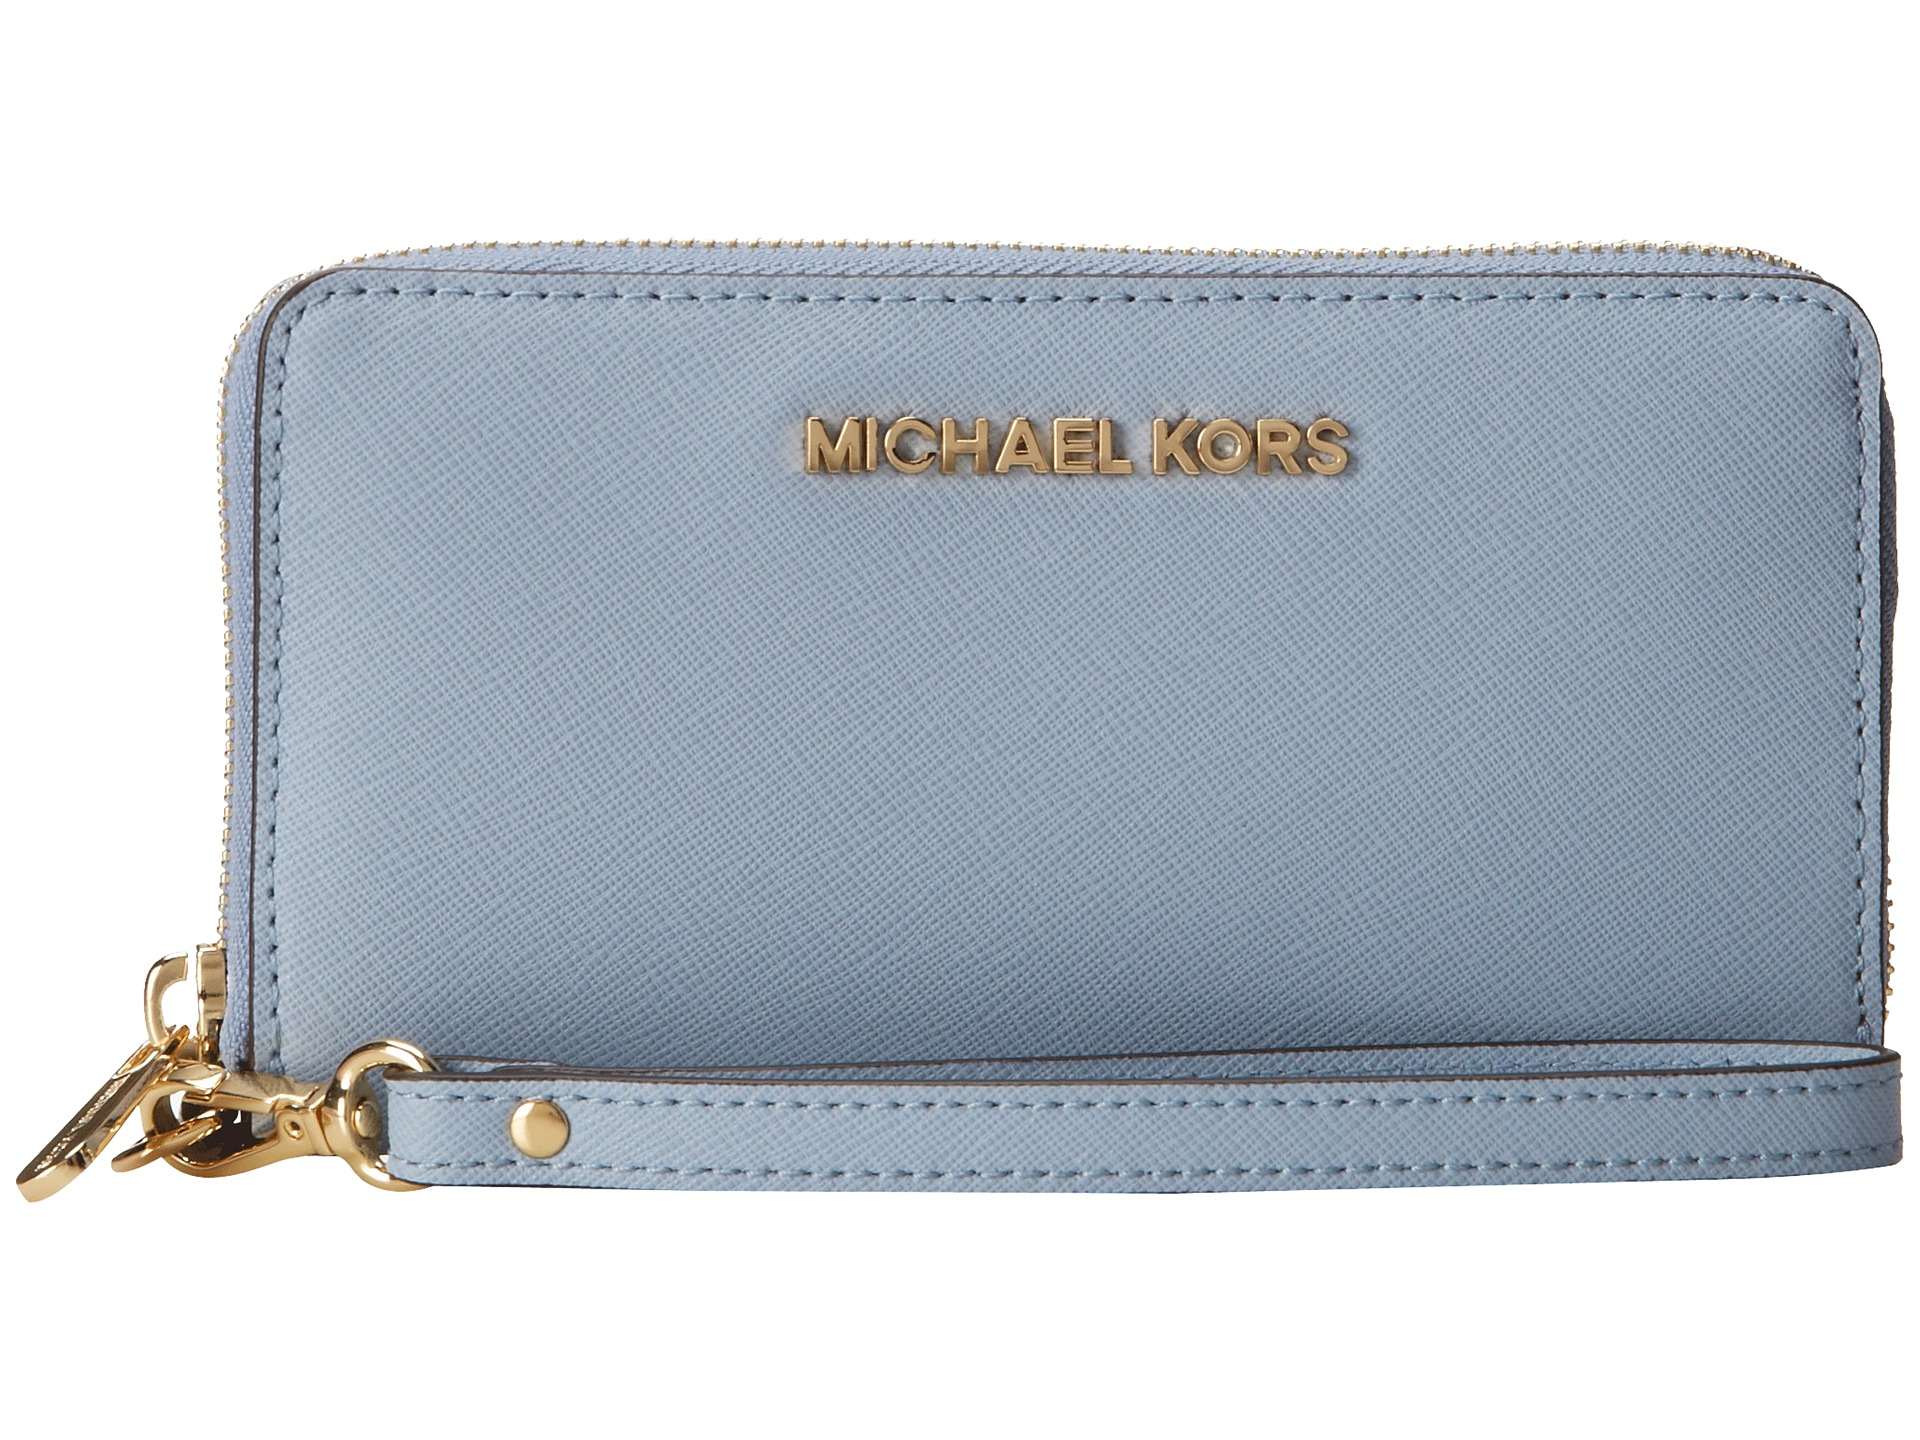 michael kors wallet pale blue